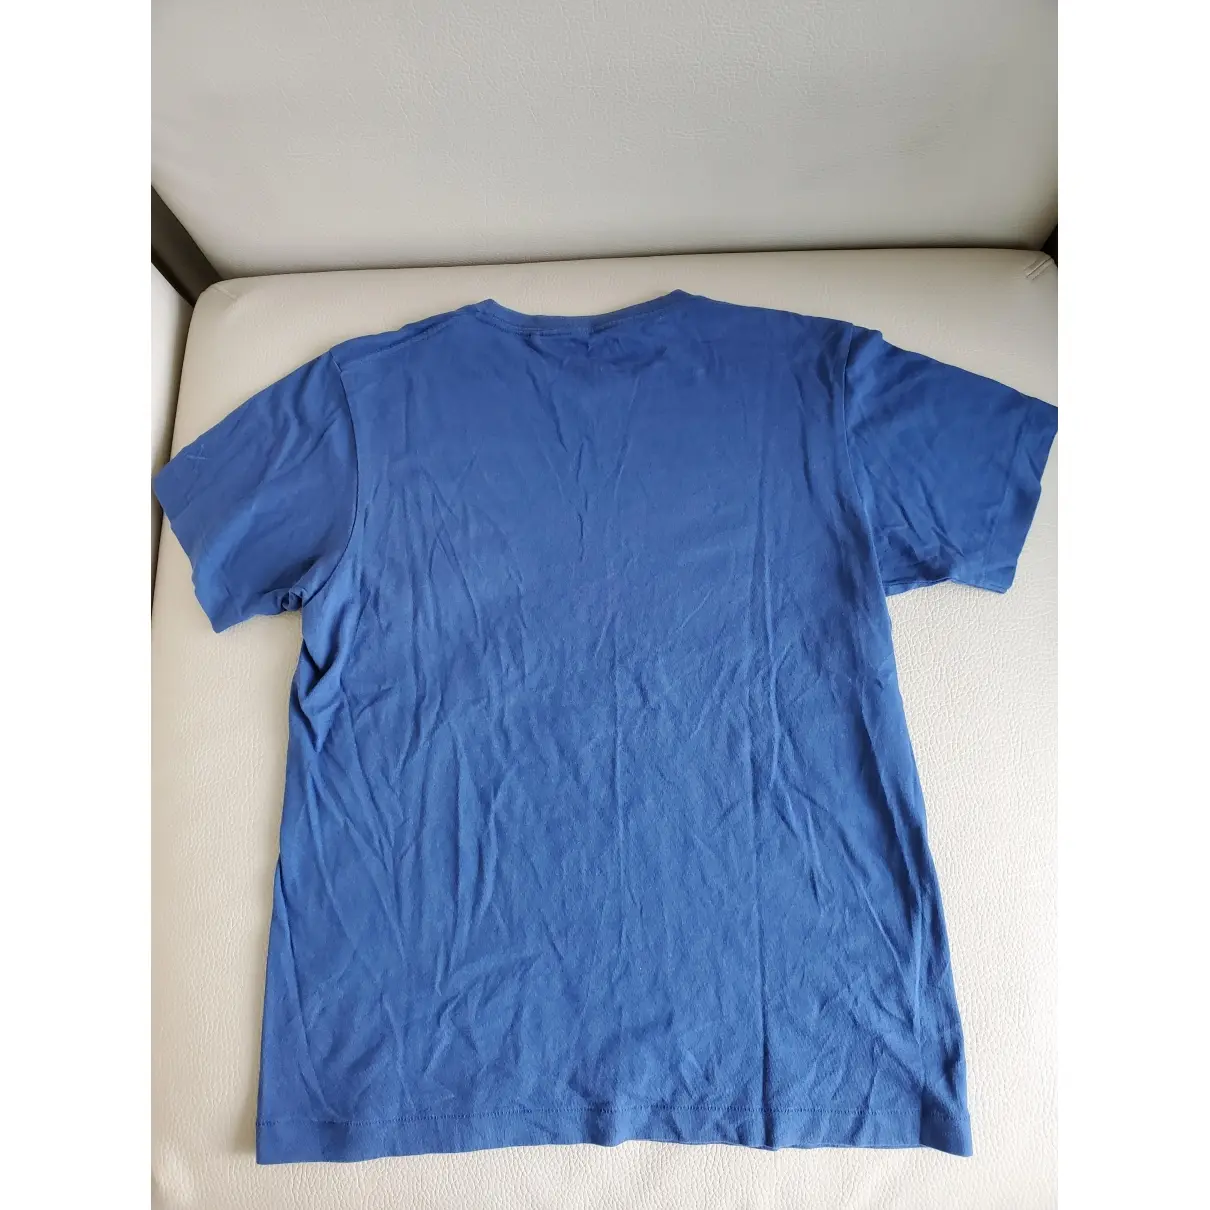 Kaws x Uniqlo Blue Cotton T-shirt for sale